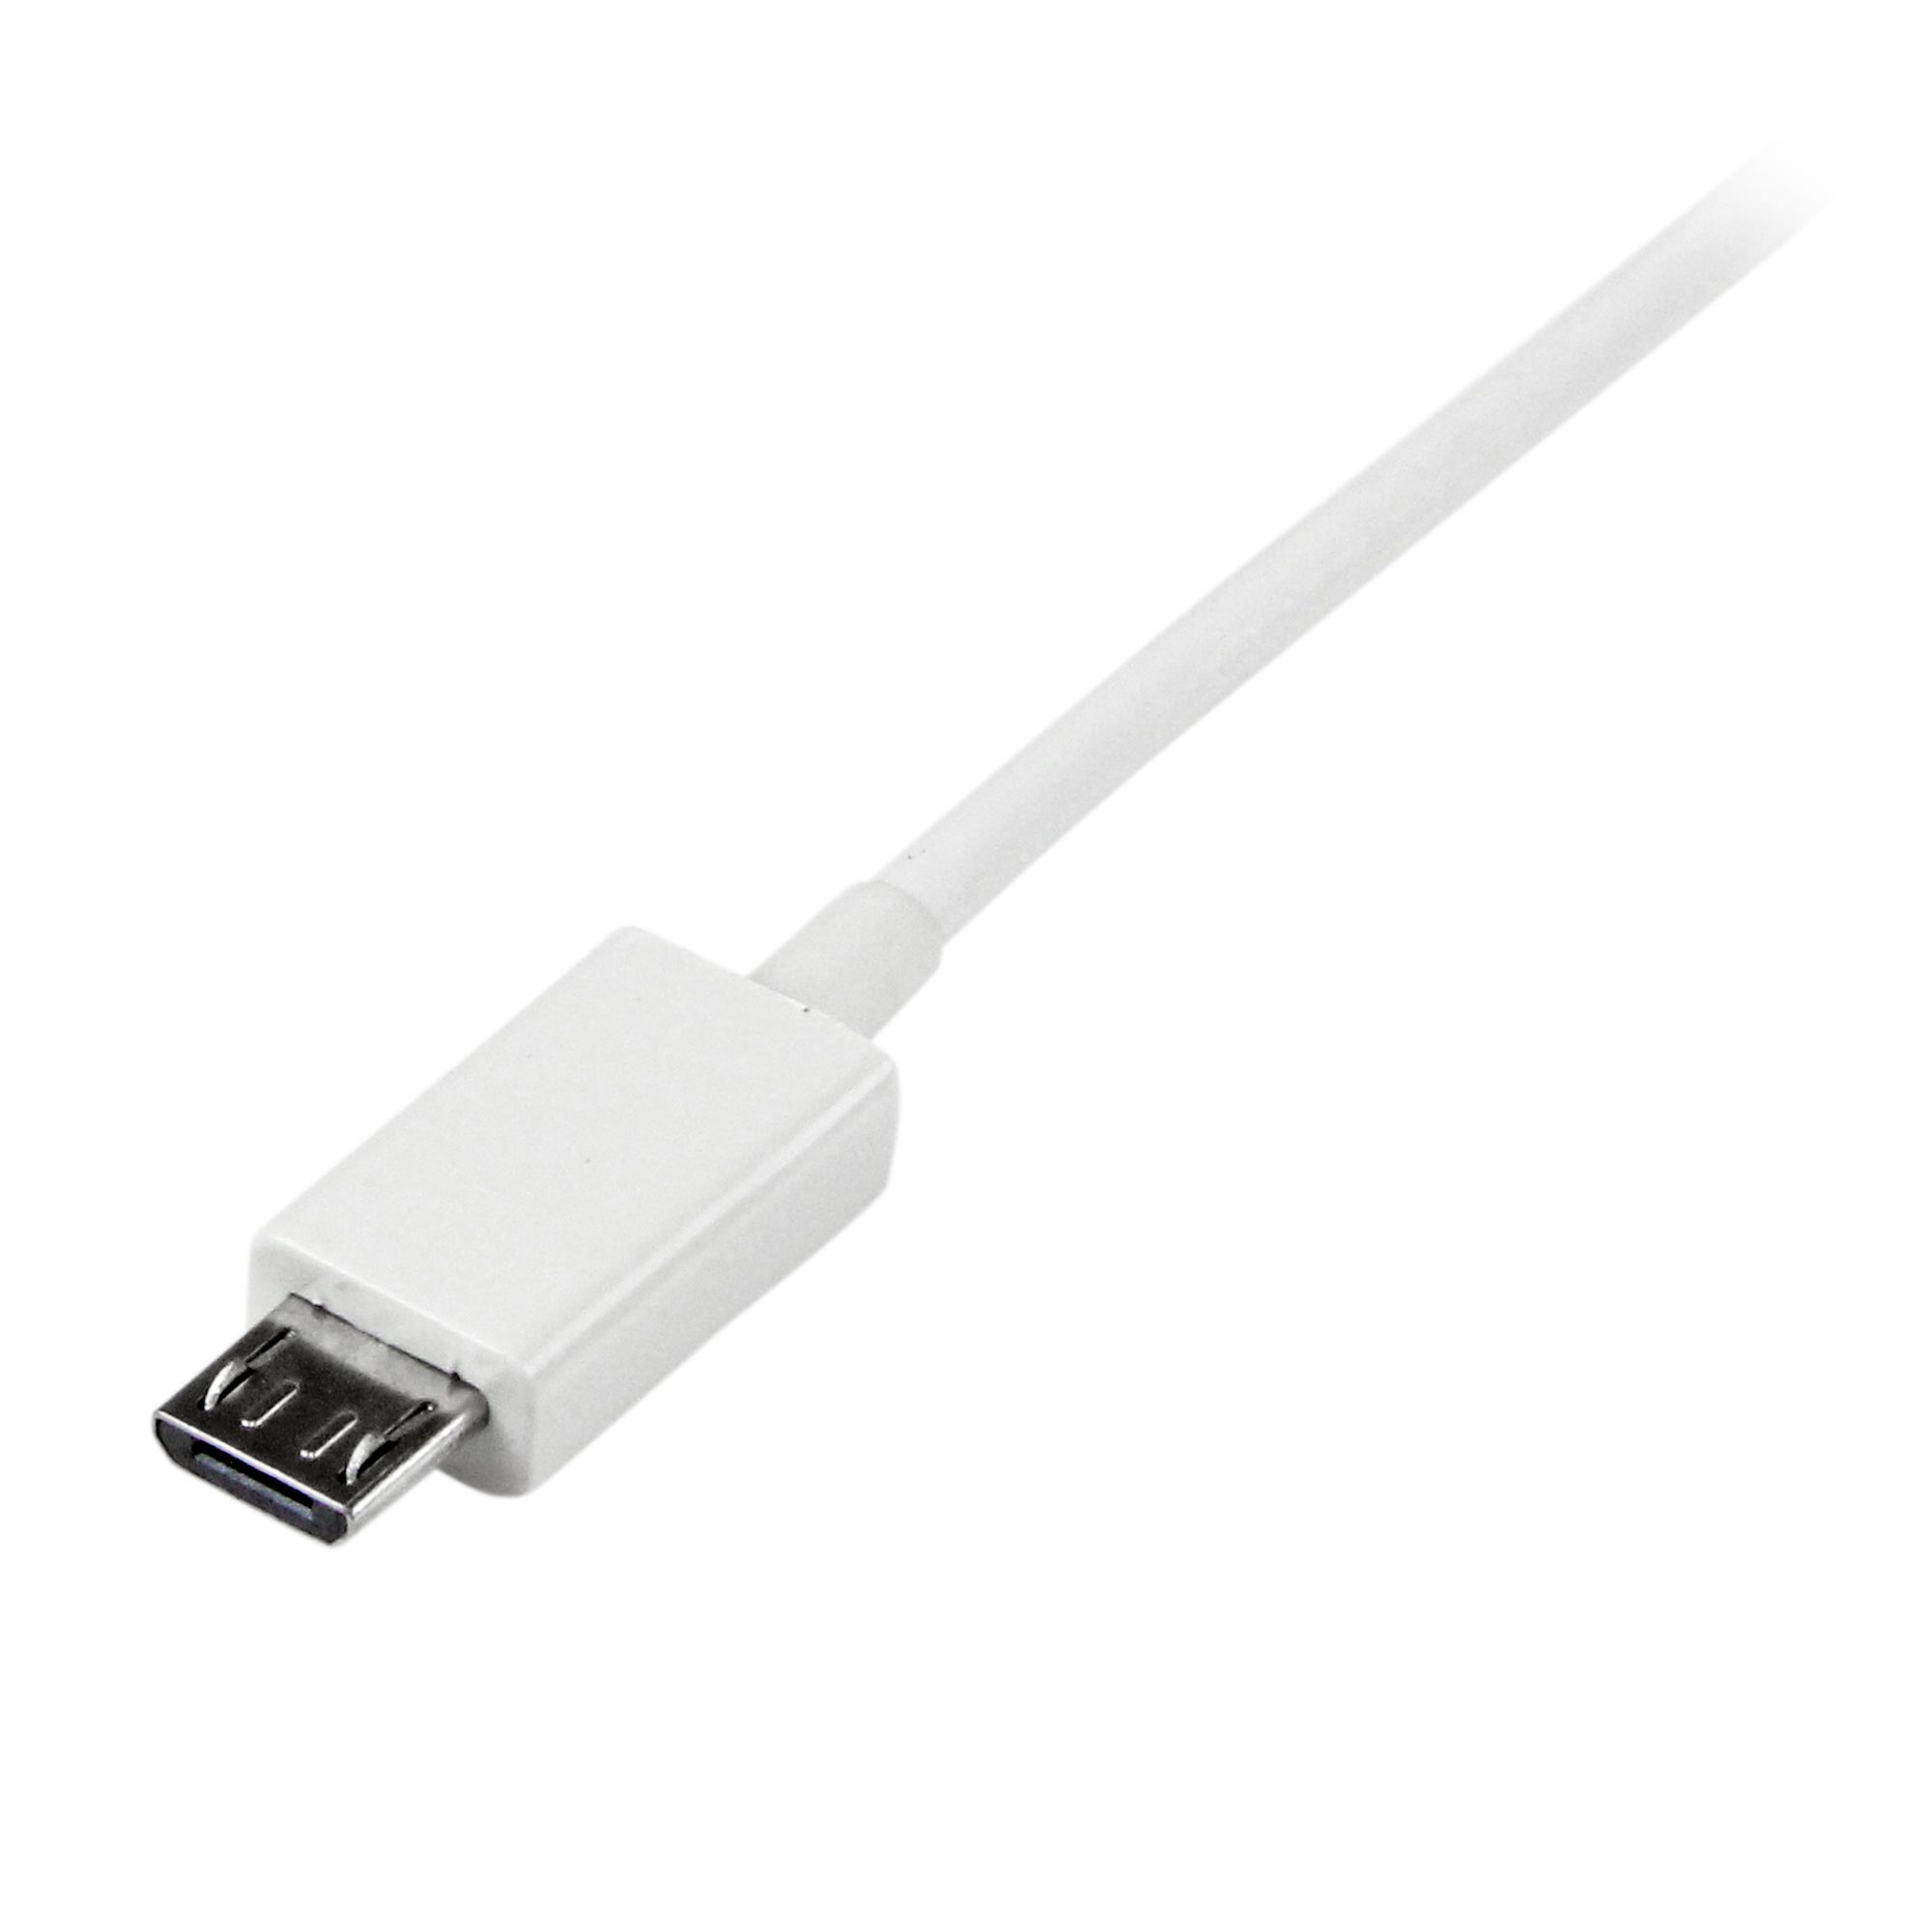 USBマイクロB ケーブル 1m ホワイト Type-A(オス) - Micro-B(オス)